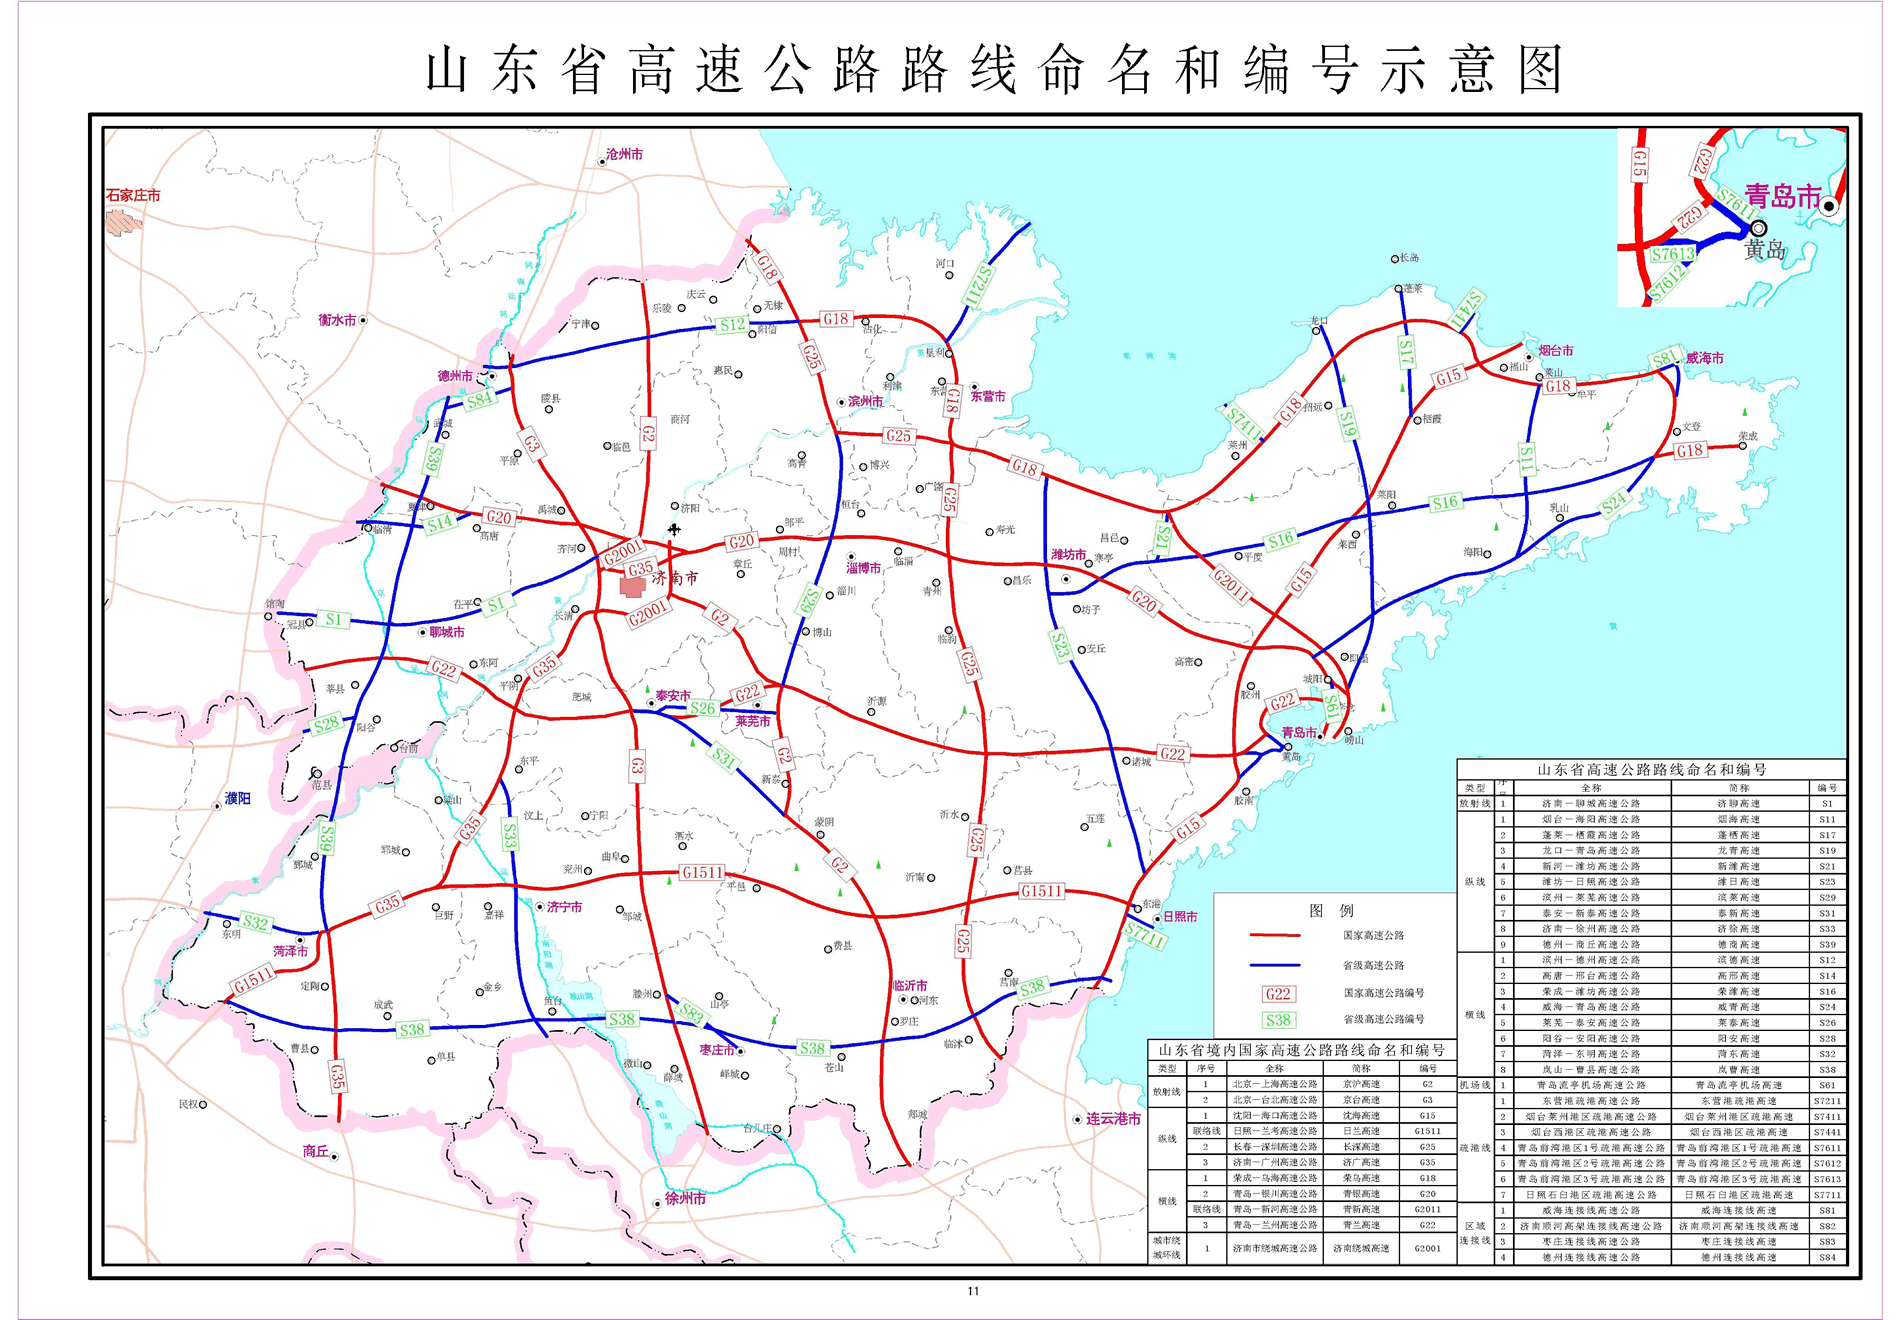 煙臺—海陽高速公路(煙海高速公路)